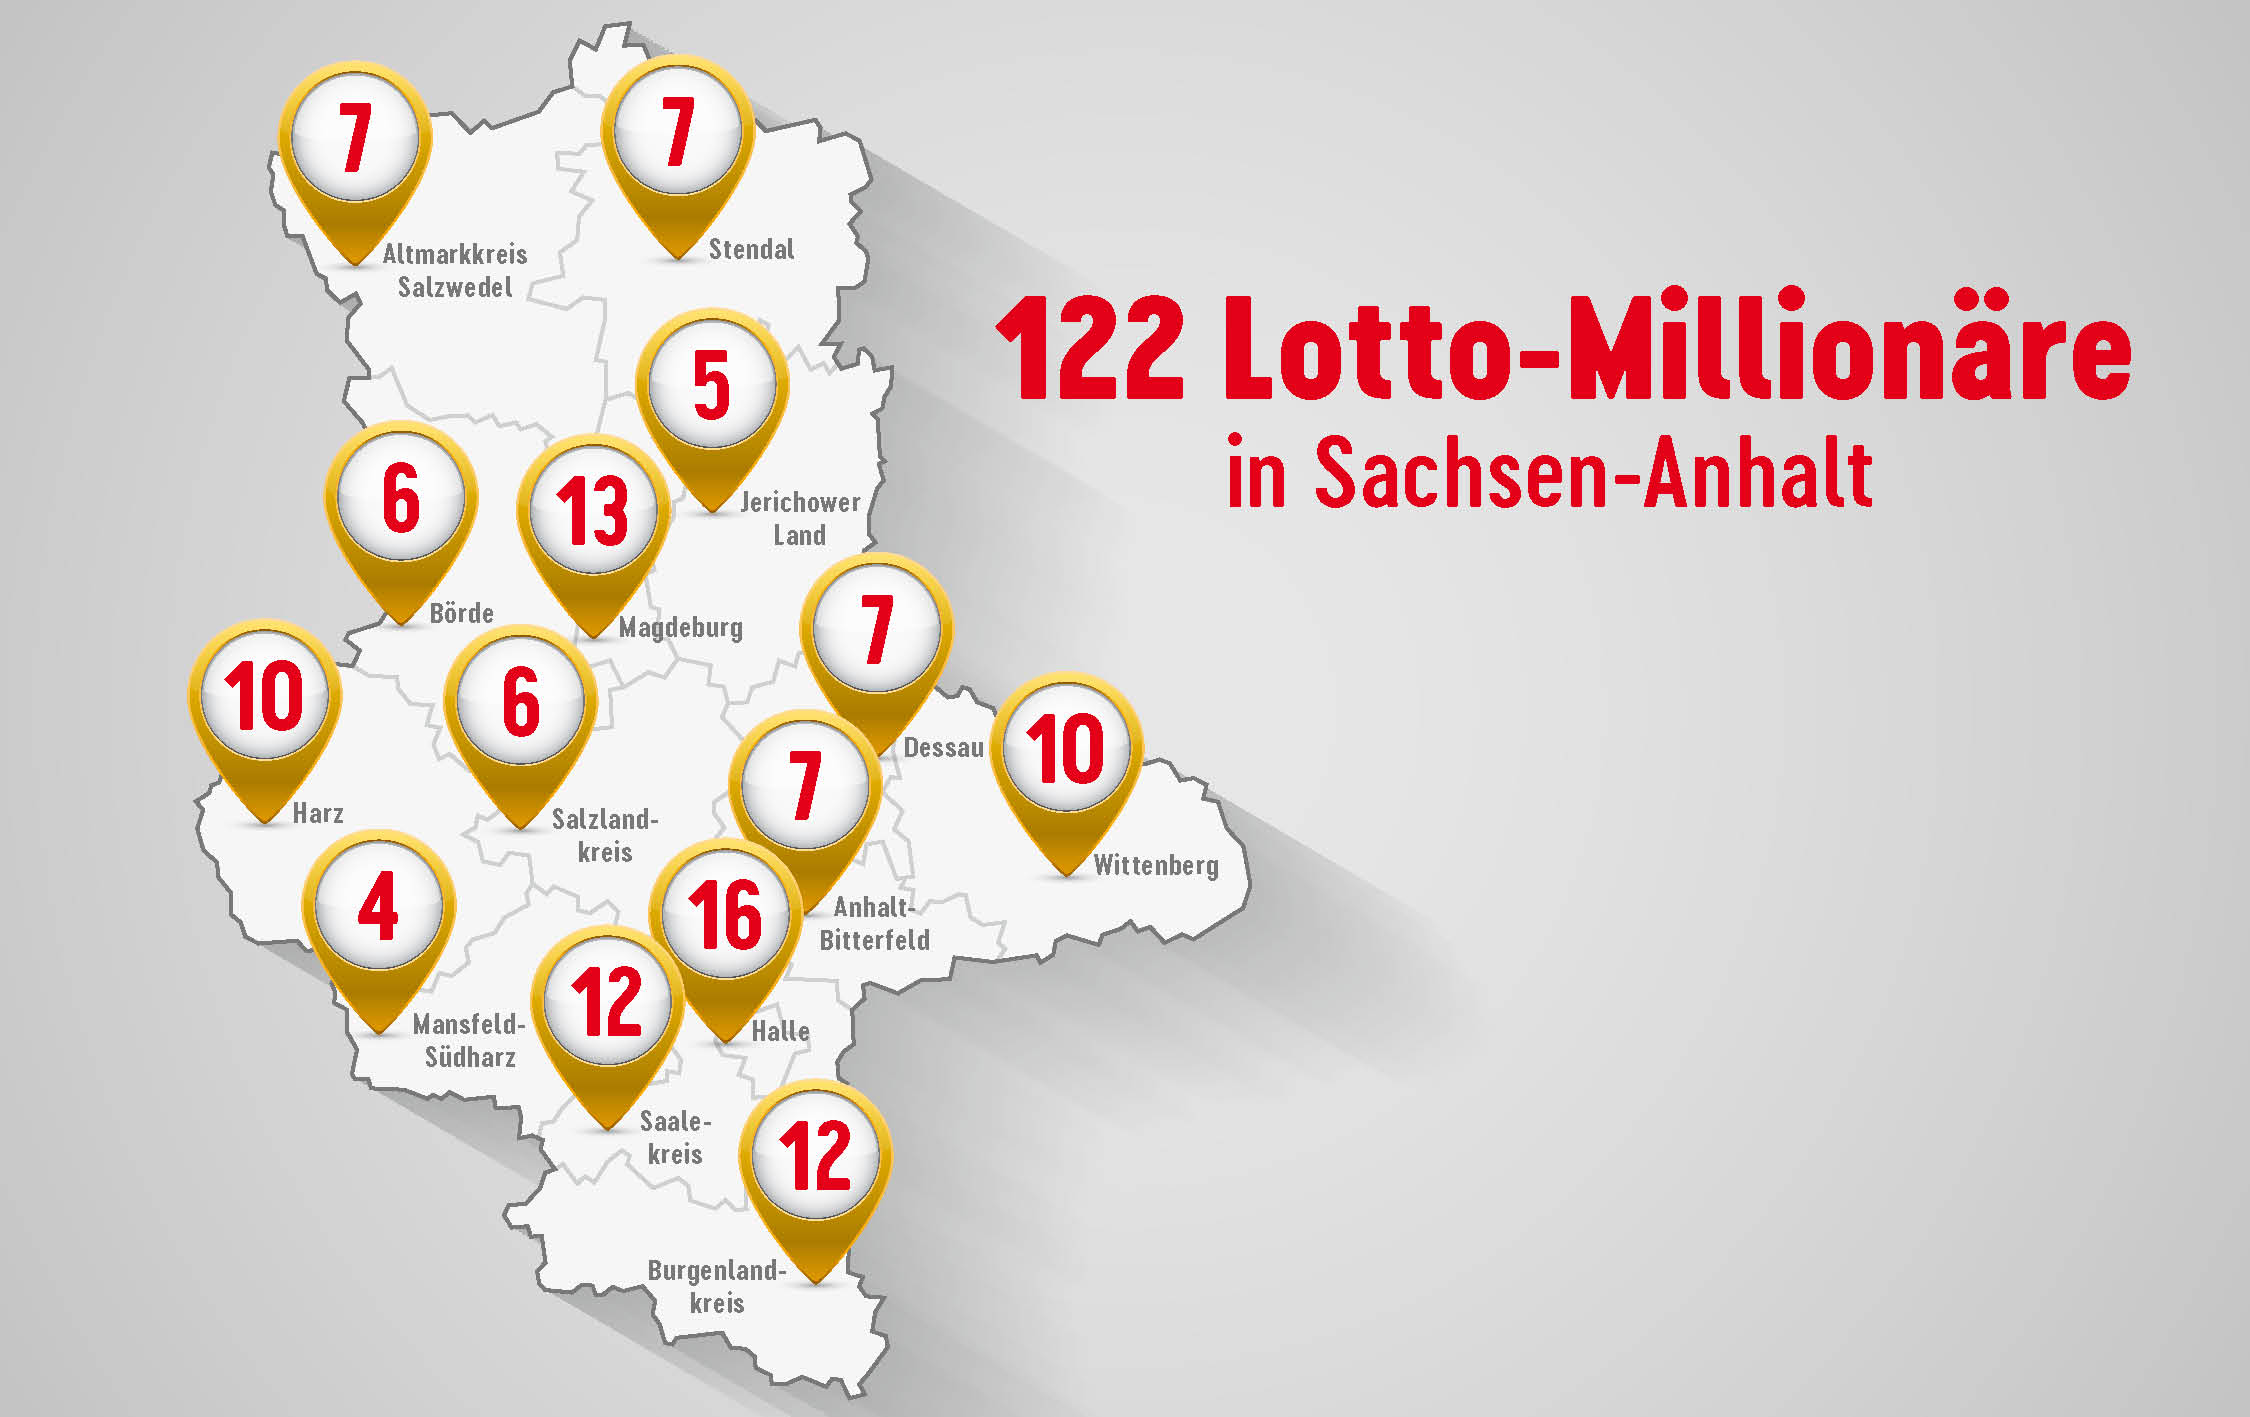 Lotto-Millionäre in Sachsen-Anhalt